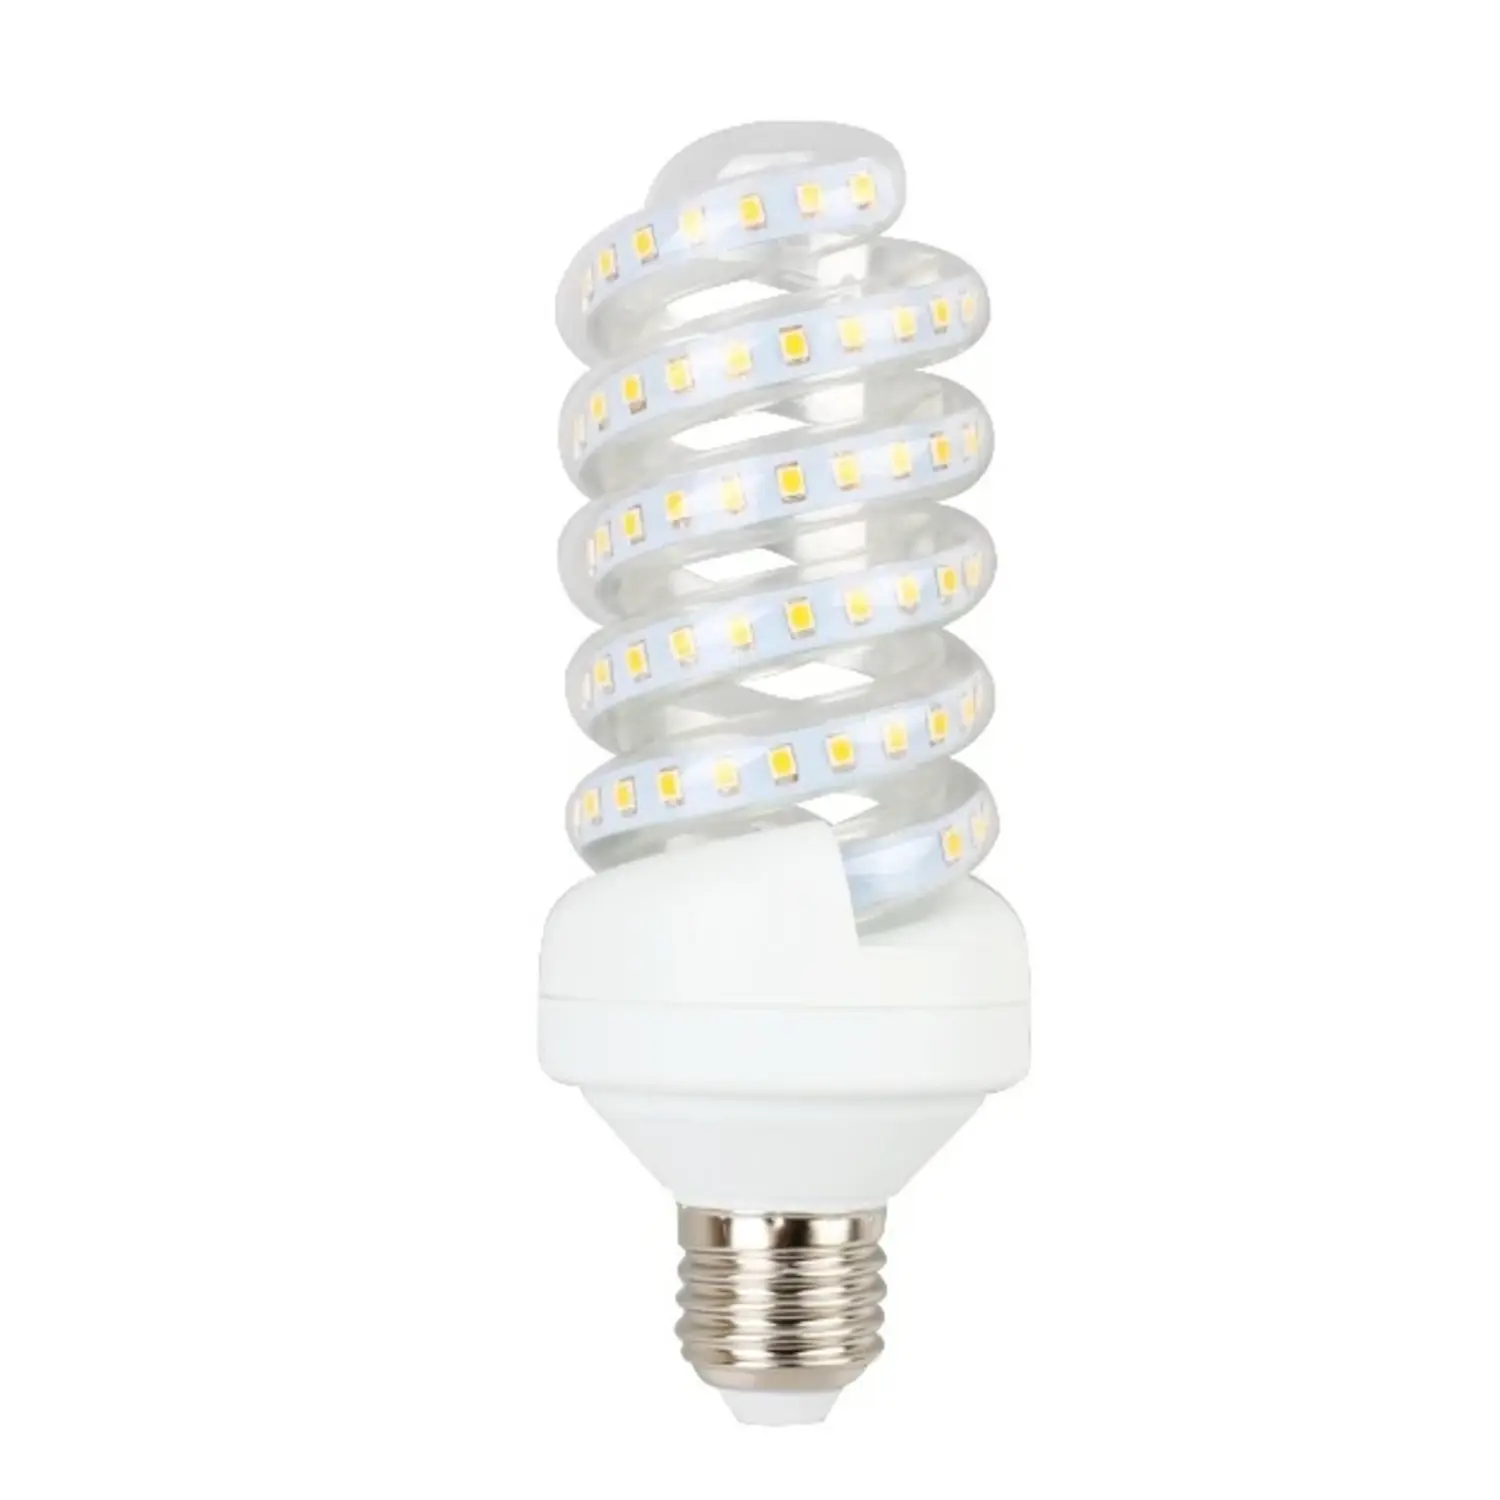 immagine del prodotto lampadina a led spirale ultra luminosa e27 20 watt 220-240 volt bianco freddo